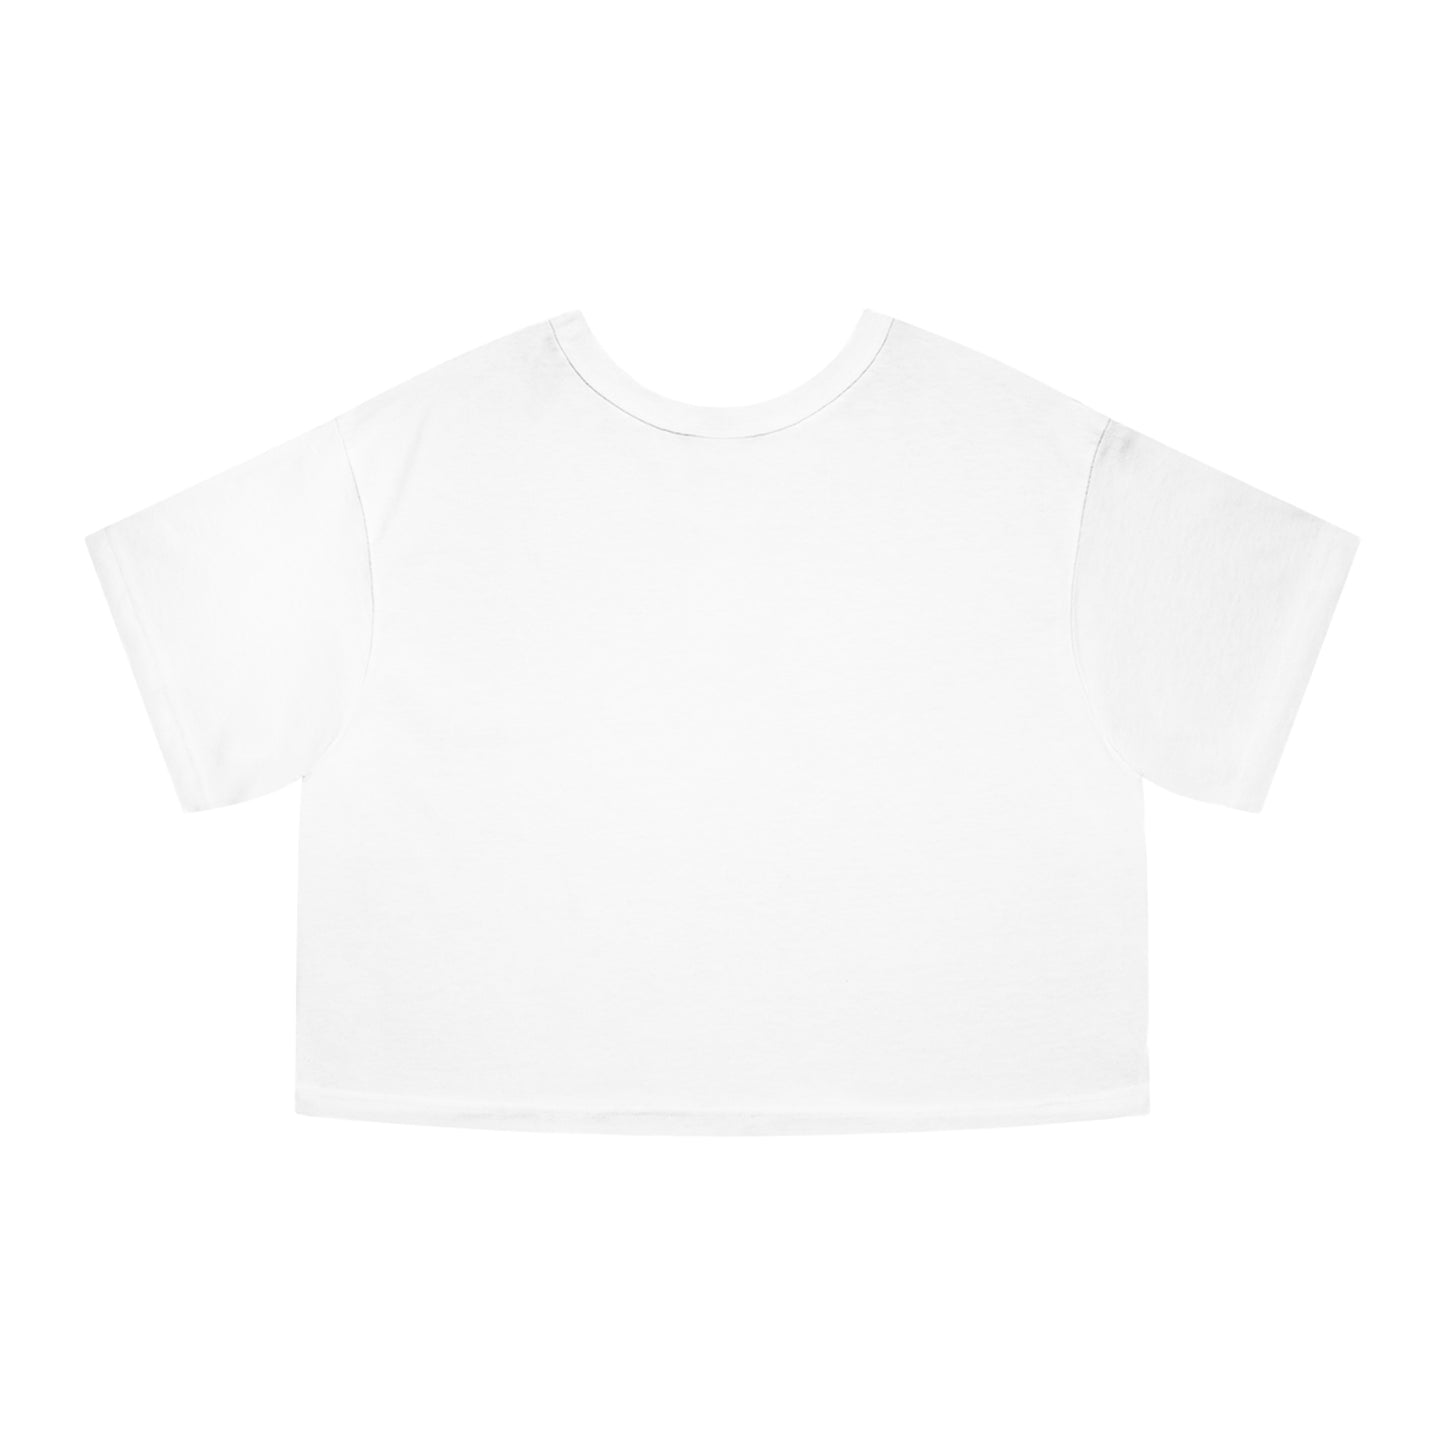 MILF ESTATES Cropped T-Shirt